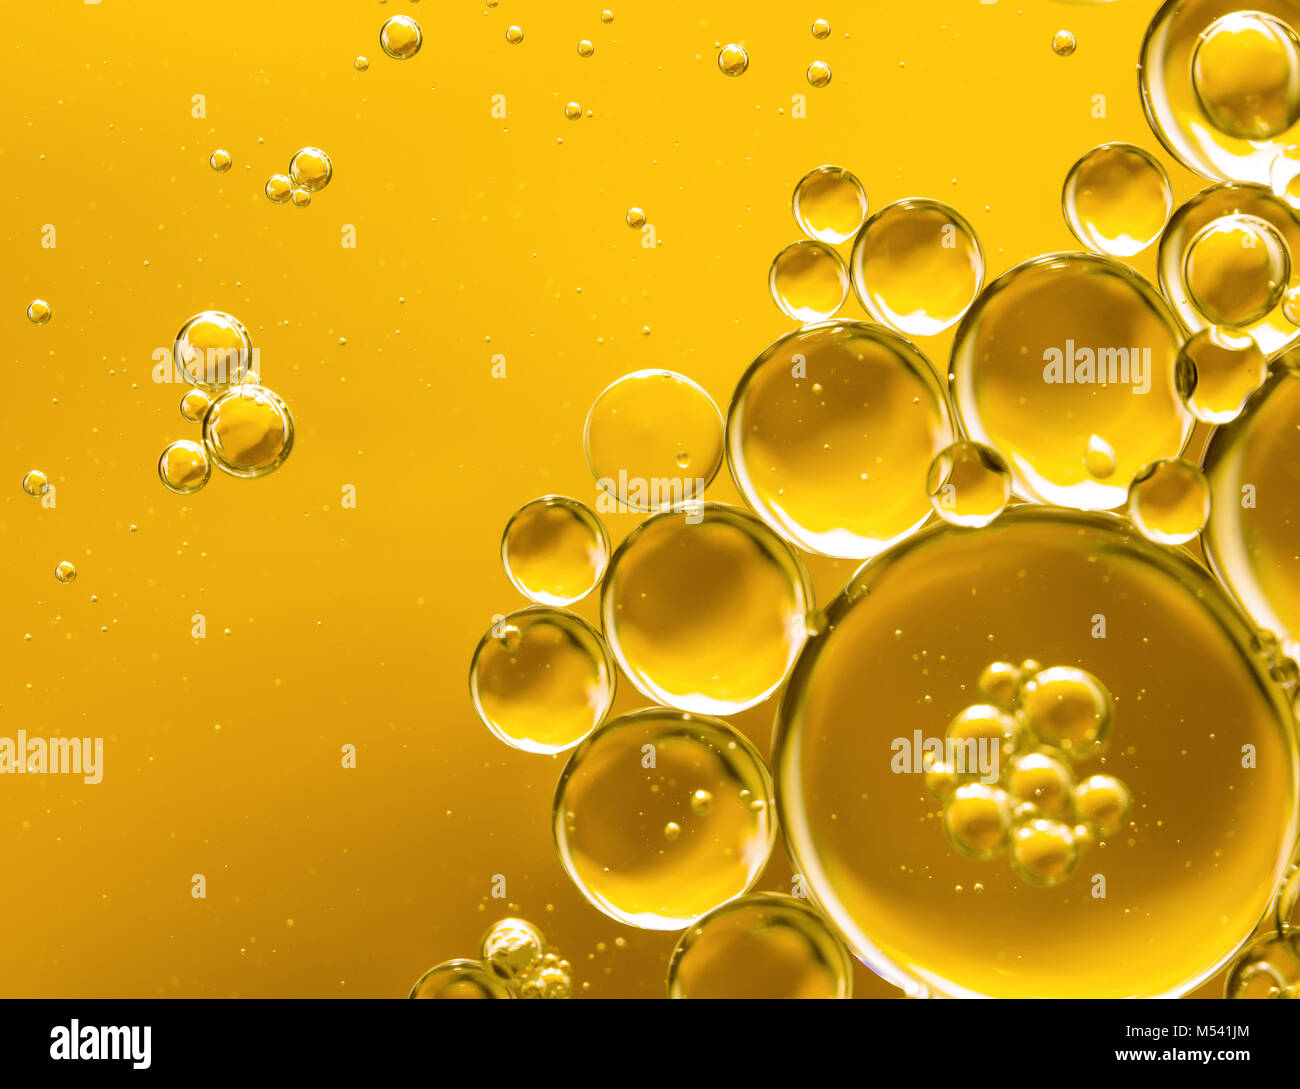 Пузырьки в масле. Пузырек с маслом. Желтое масло. Пузыри масла. Желтые пузырьки желтые.